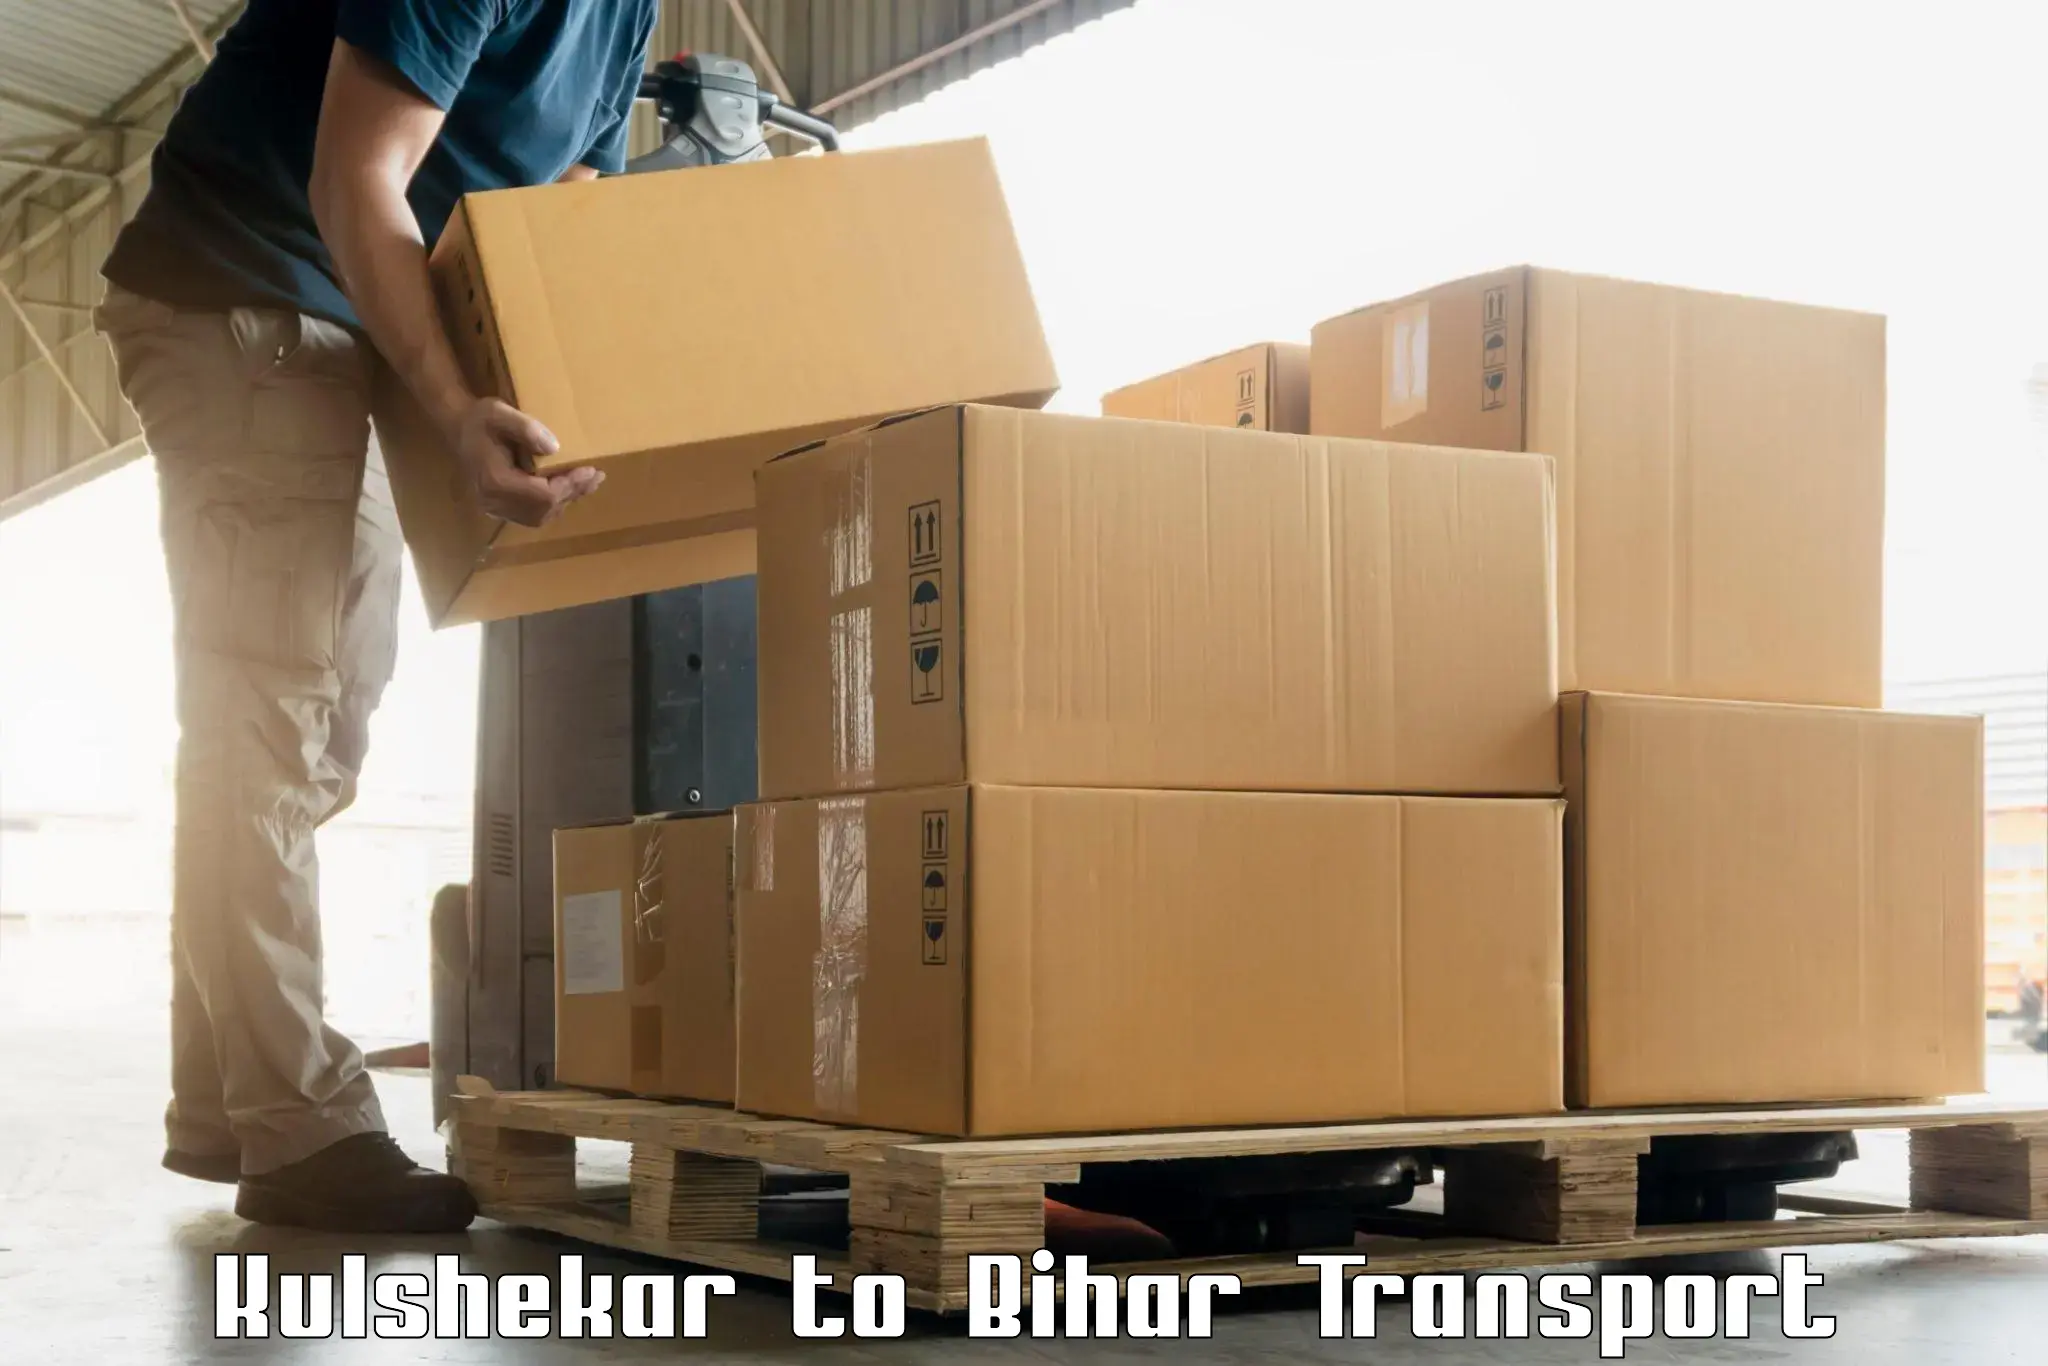 Two wheeler parcel service Kulshekar to Kharagpur Munger